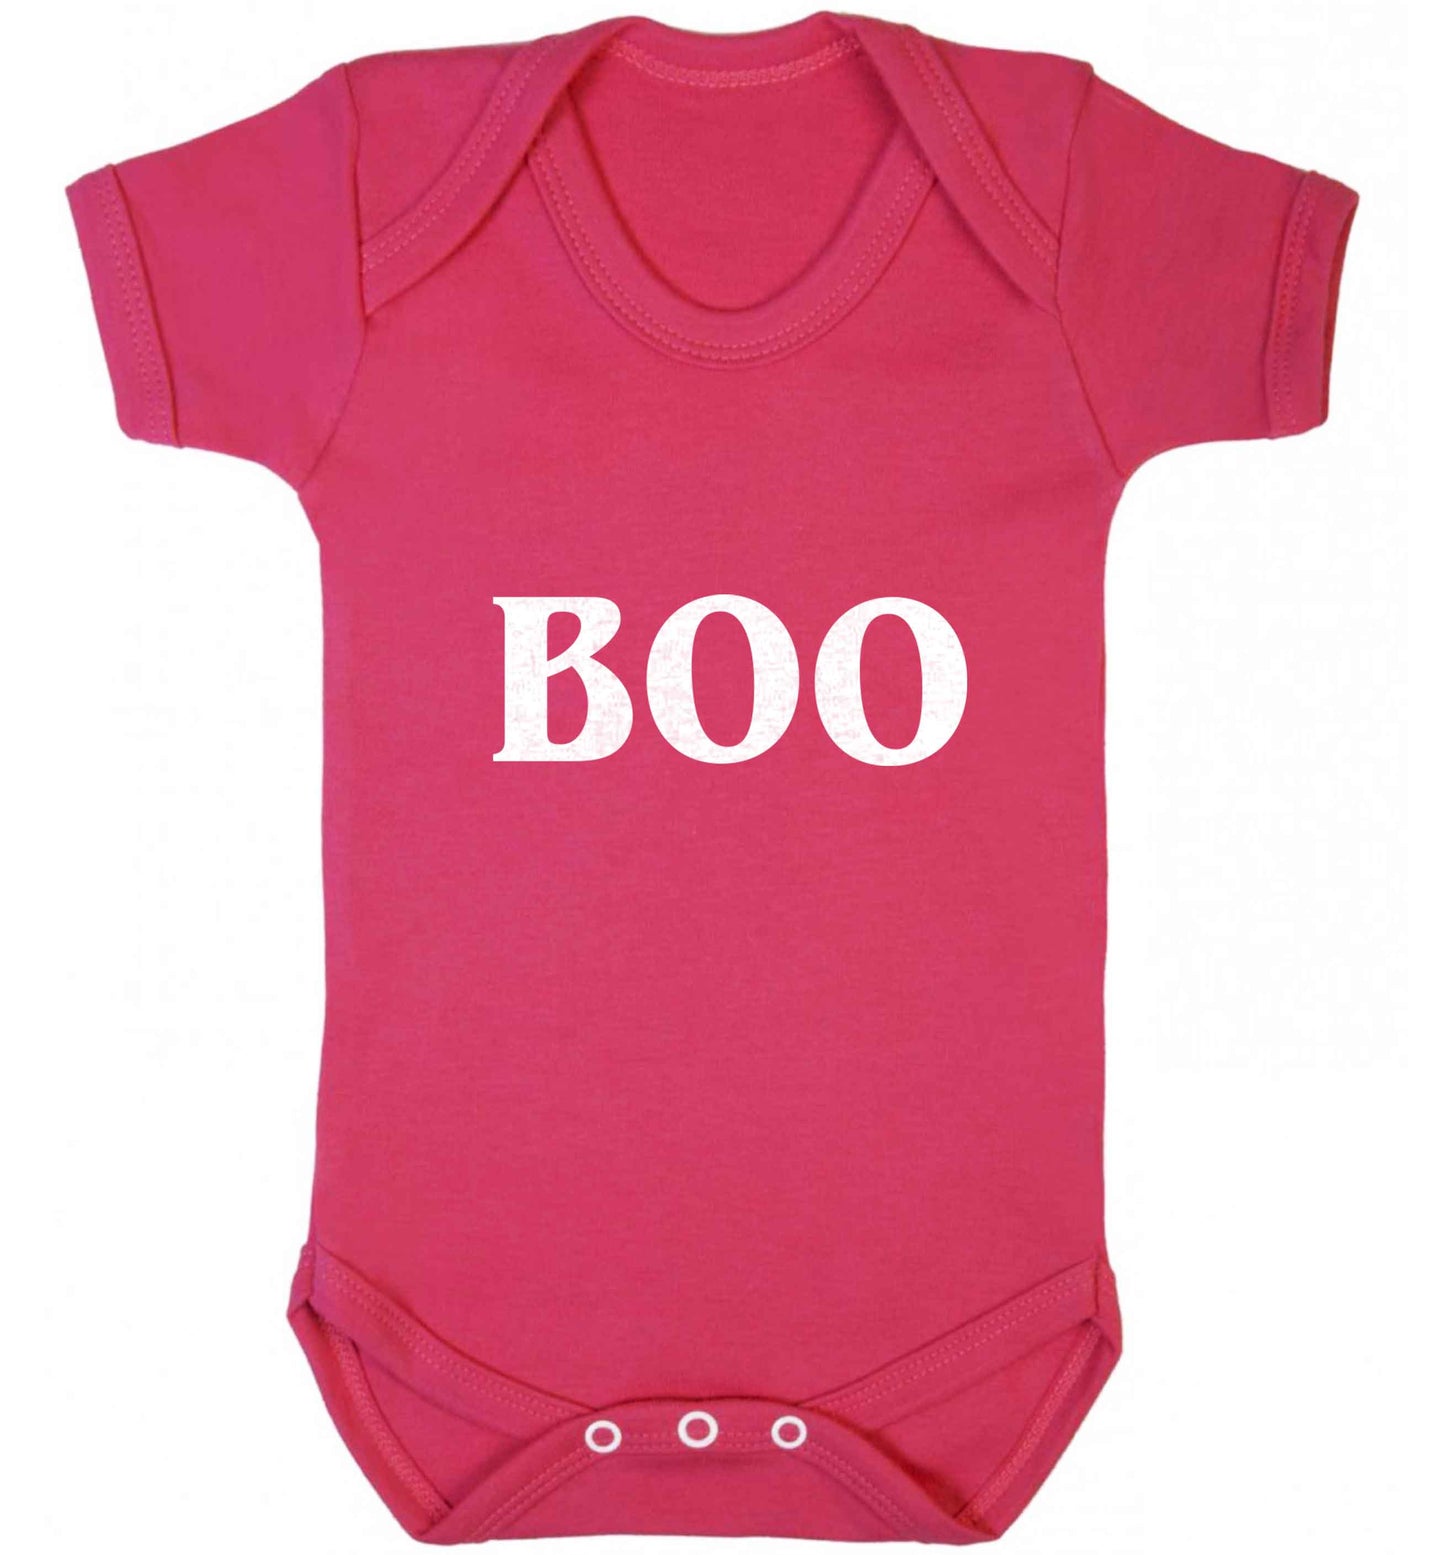 Boo baby vest dark pink 18-24 months